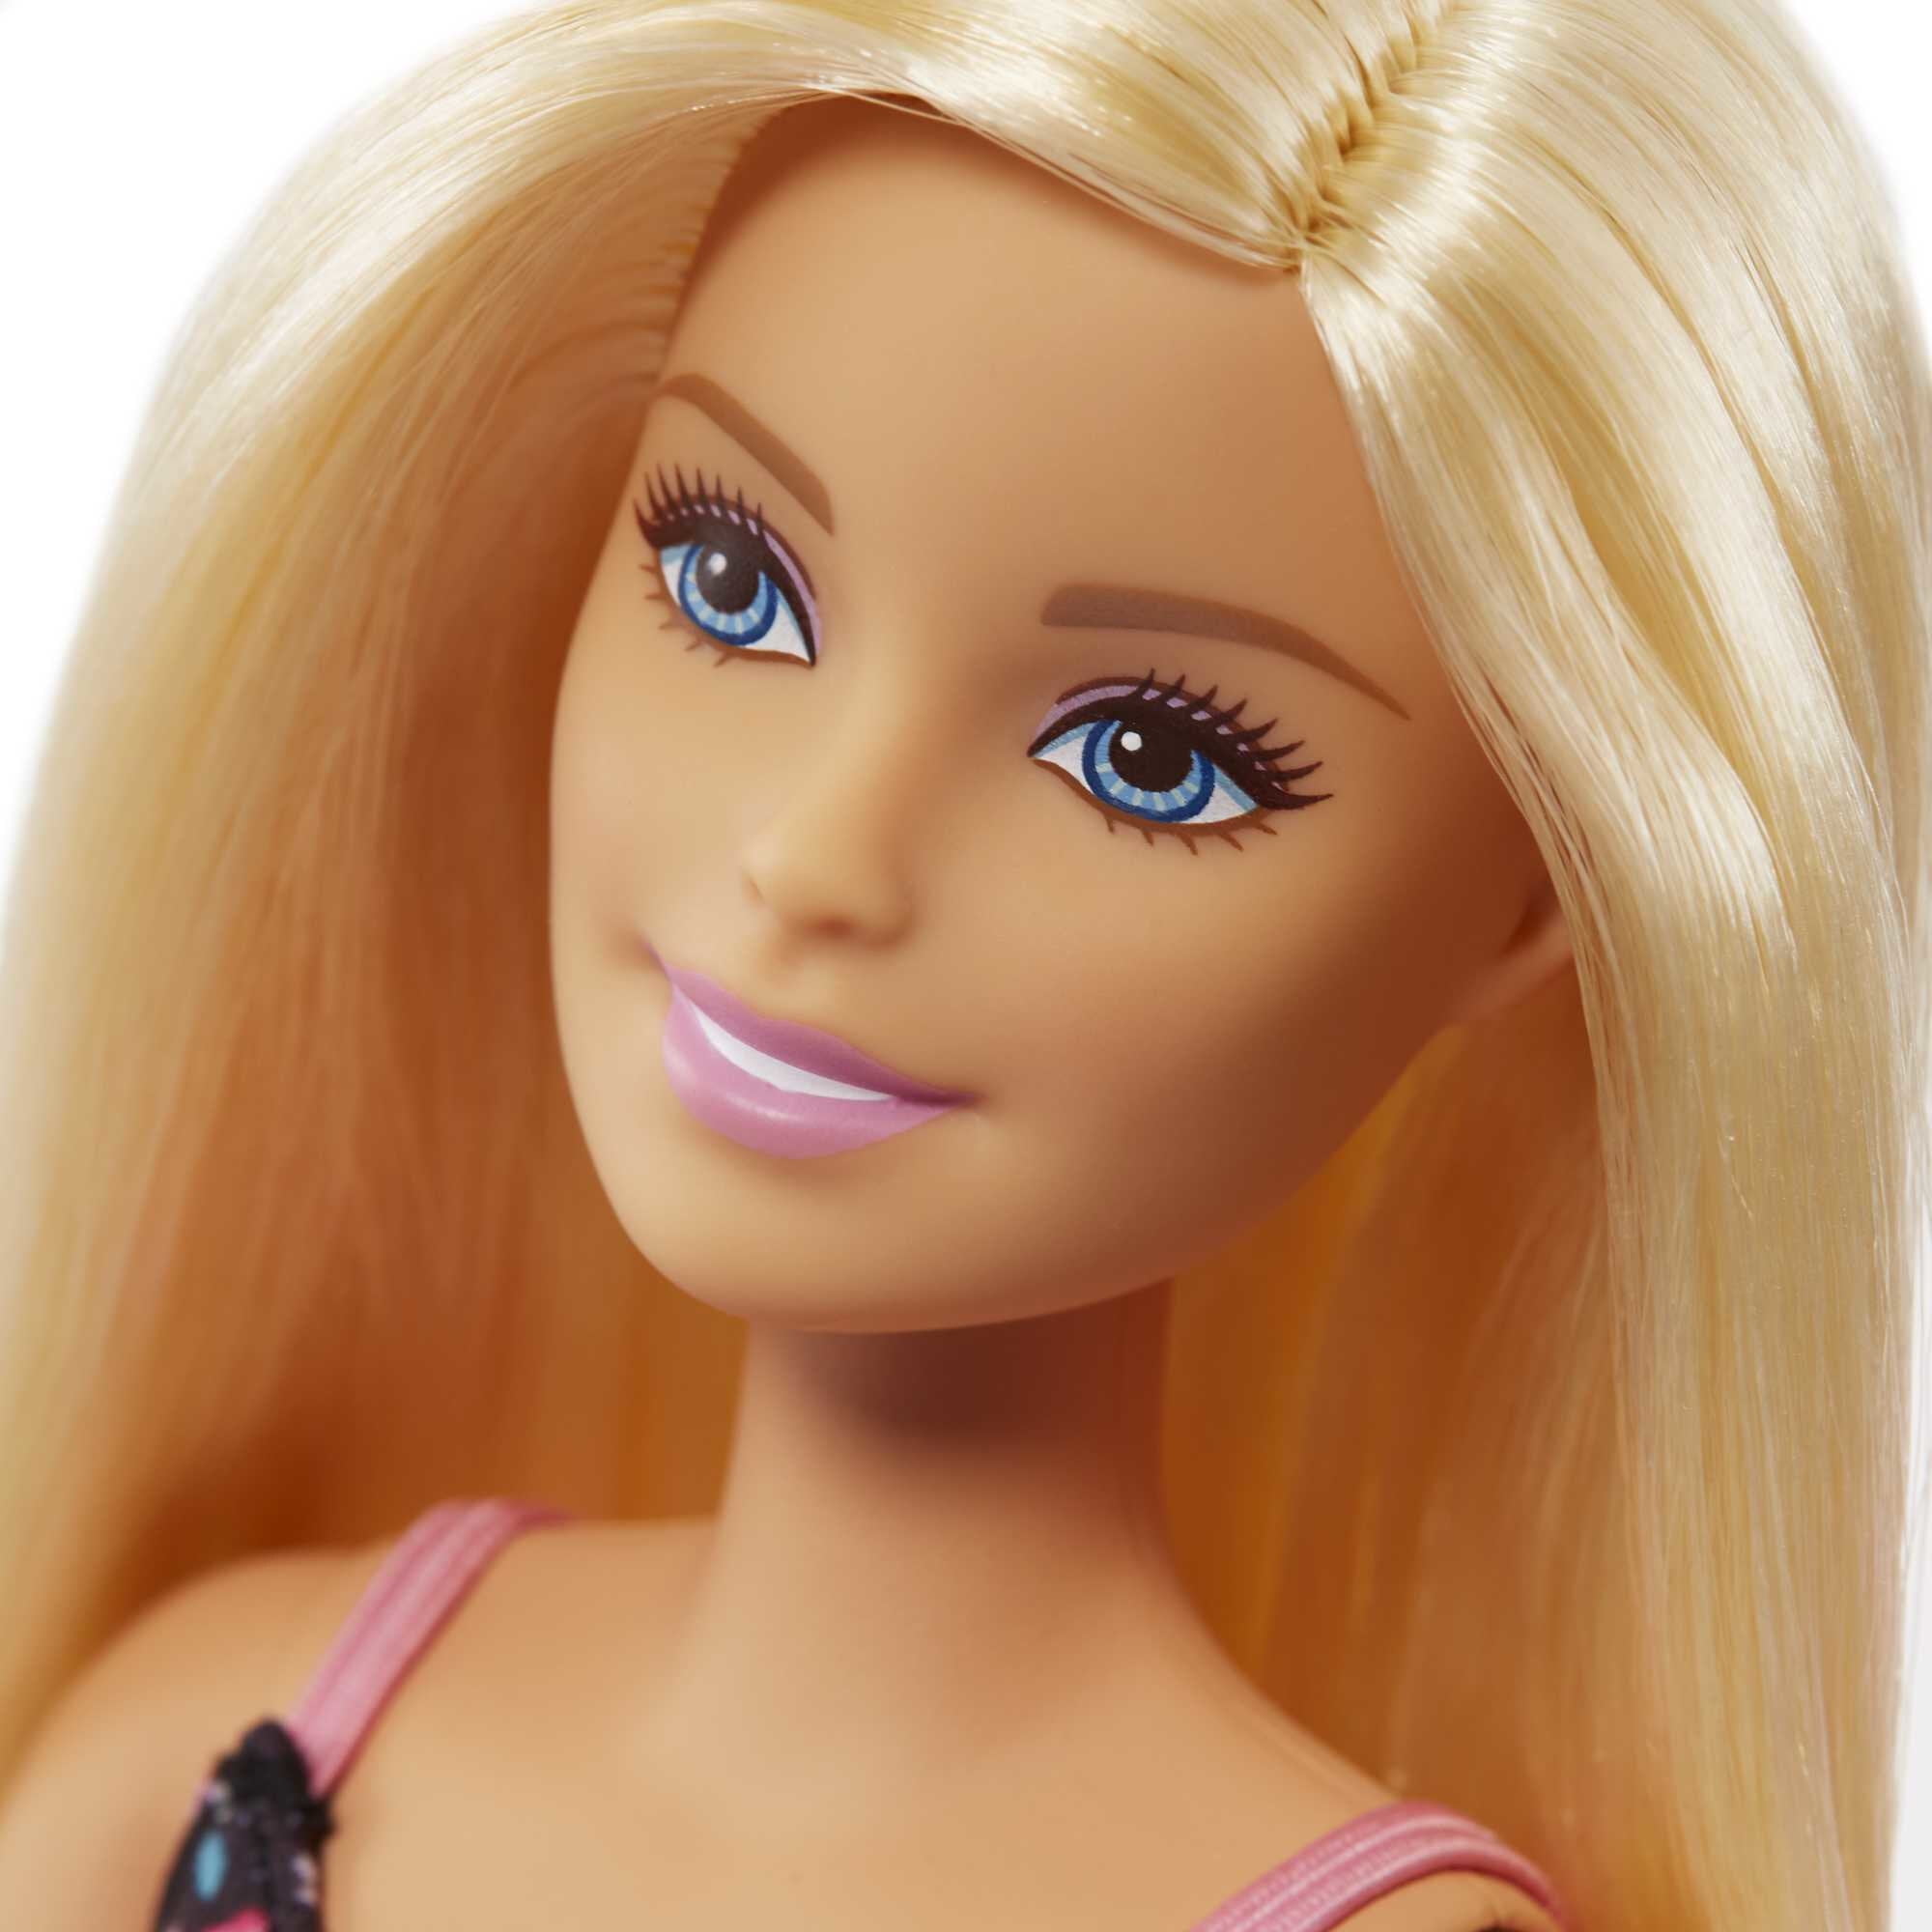 Кукла барби 2. Набор Barbie frp01 супермаркет. Барби Маттел. Кукла Маттель Барби. Mattel Barbie frp01 Барби супермаркет в ассортименте.